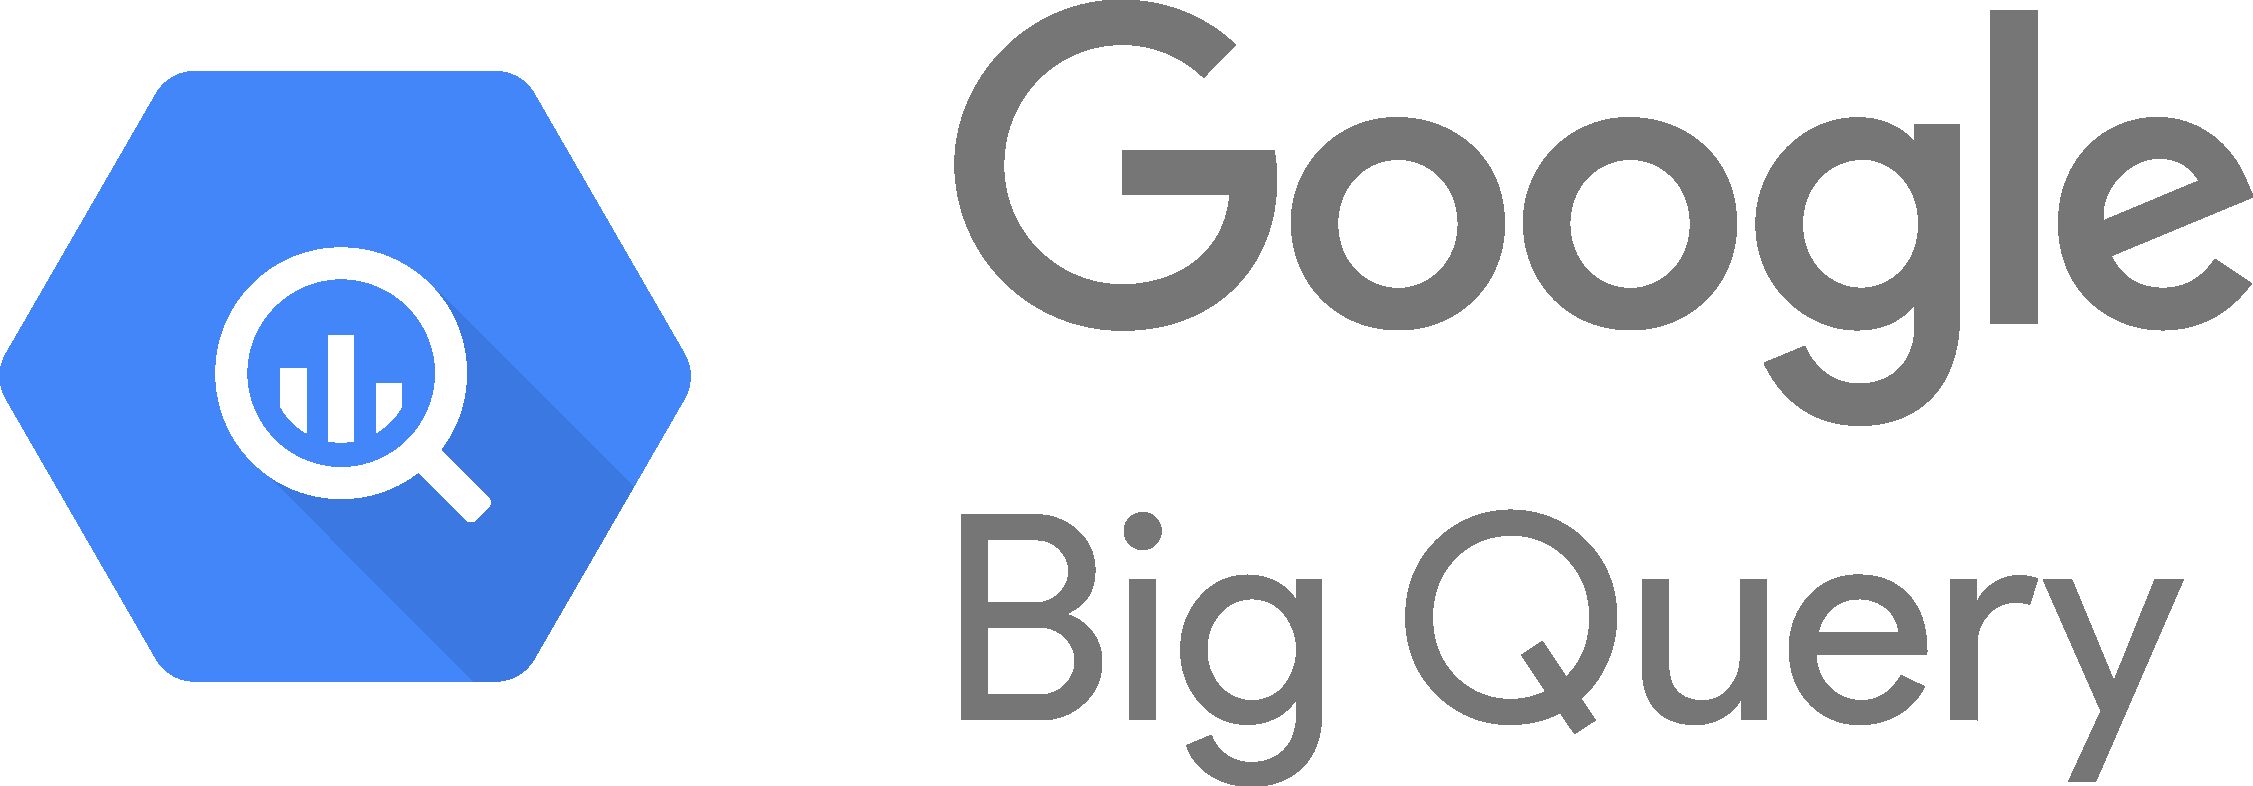 Google Big Query Logo - Google Bigquery Logo Clipart (2253x786), Png Download